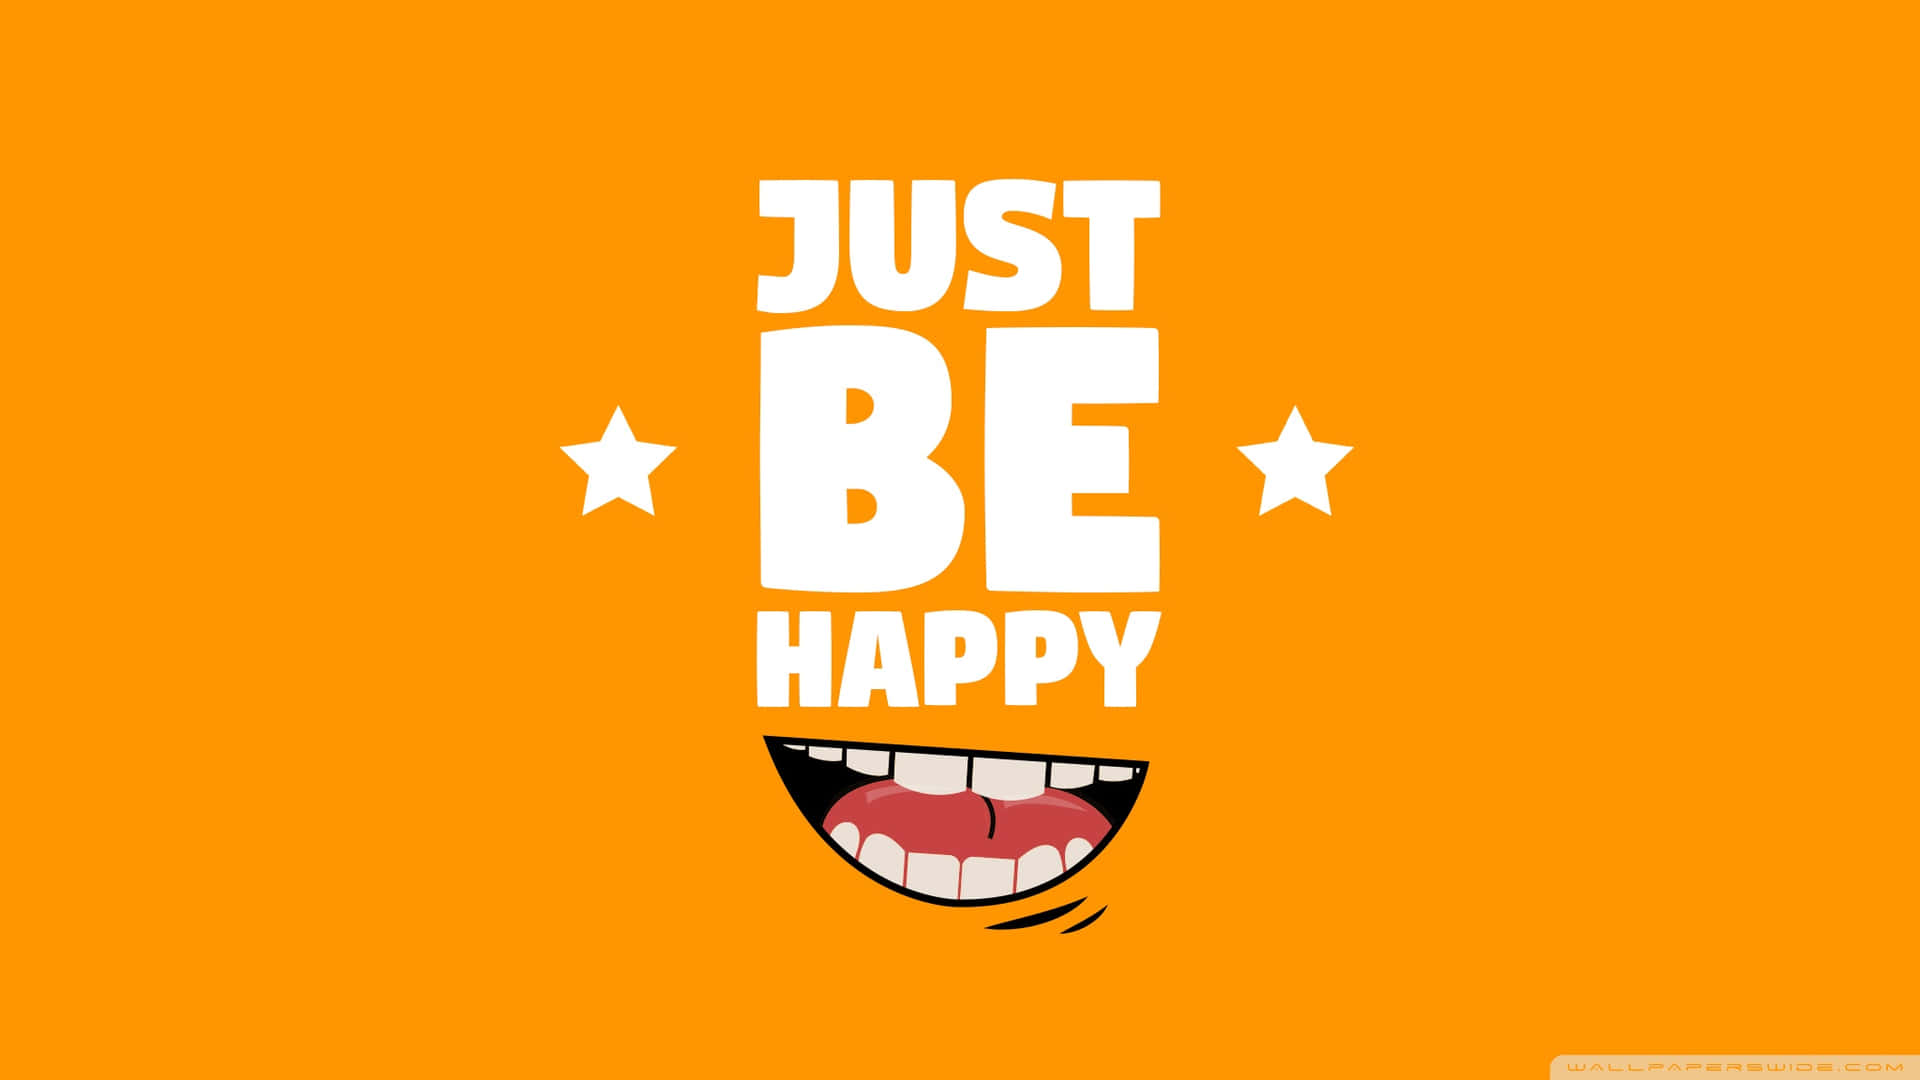 Live joyfully and be happy Wallpaper